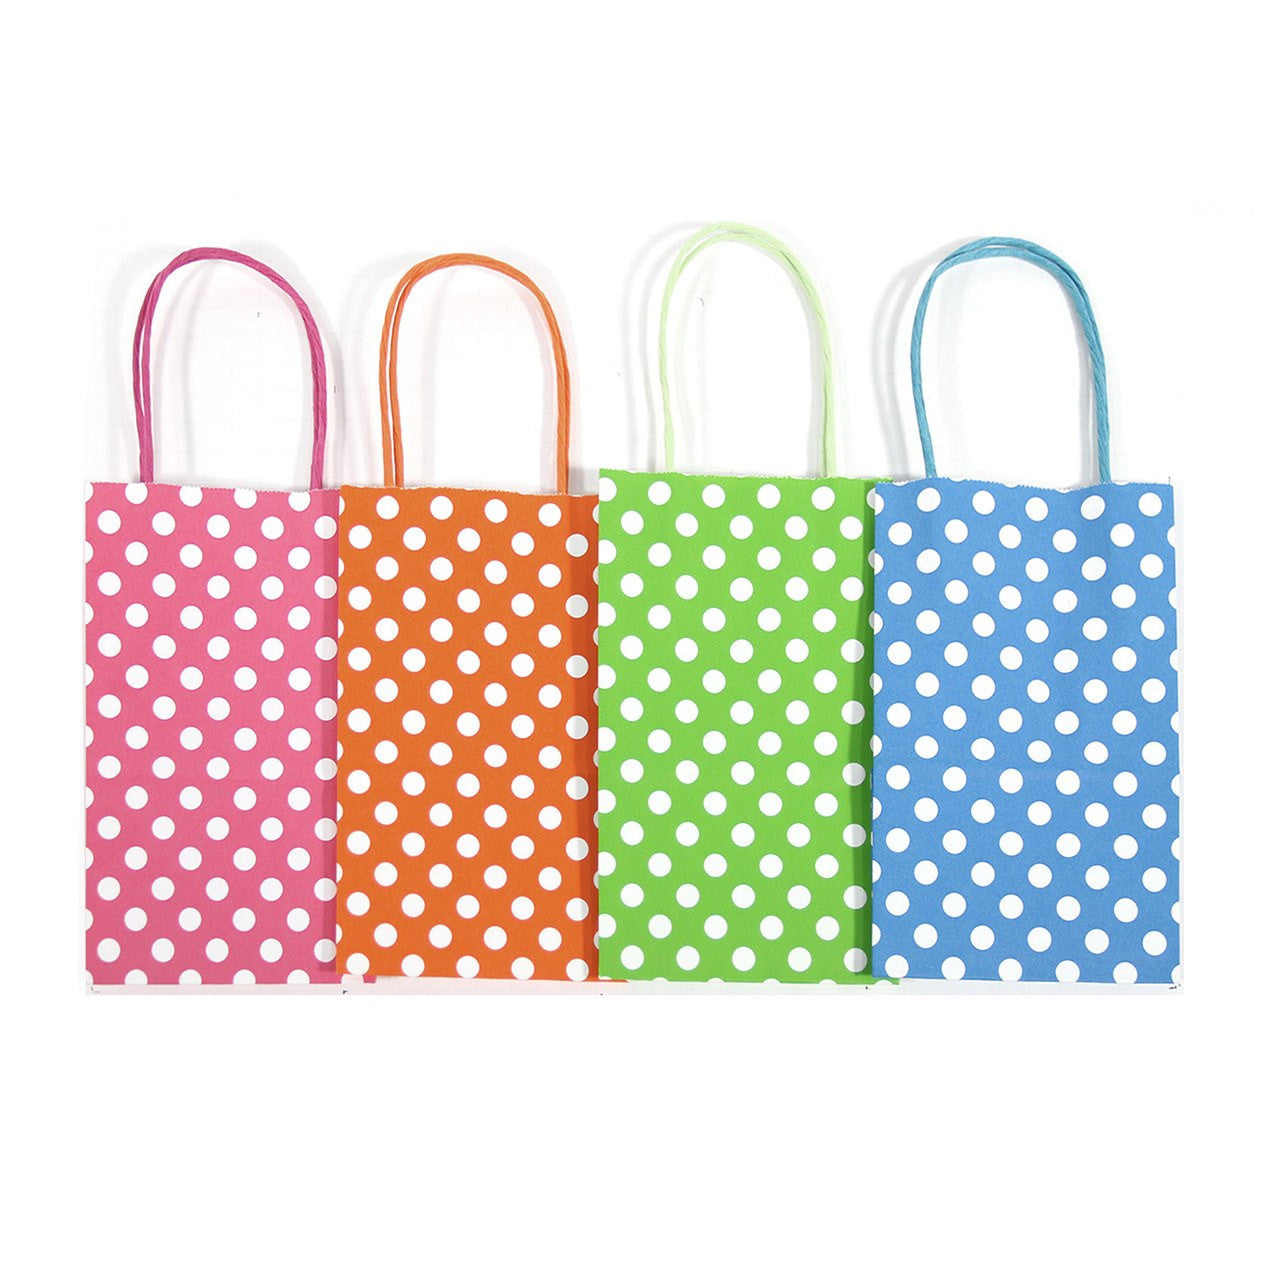 12 pcs- Polka Dots Assorted Neon Color Kraft Bag 5" x 8.25"